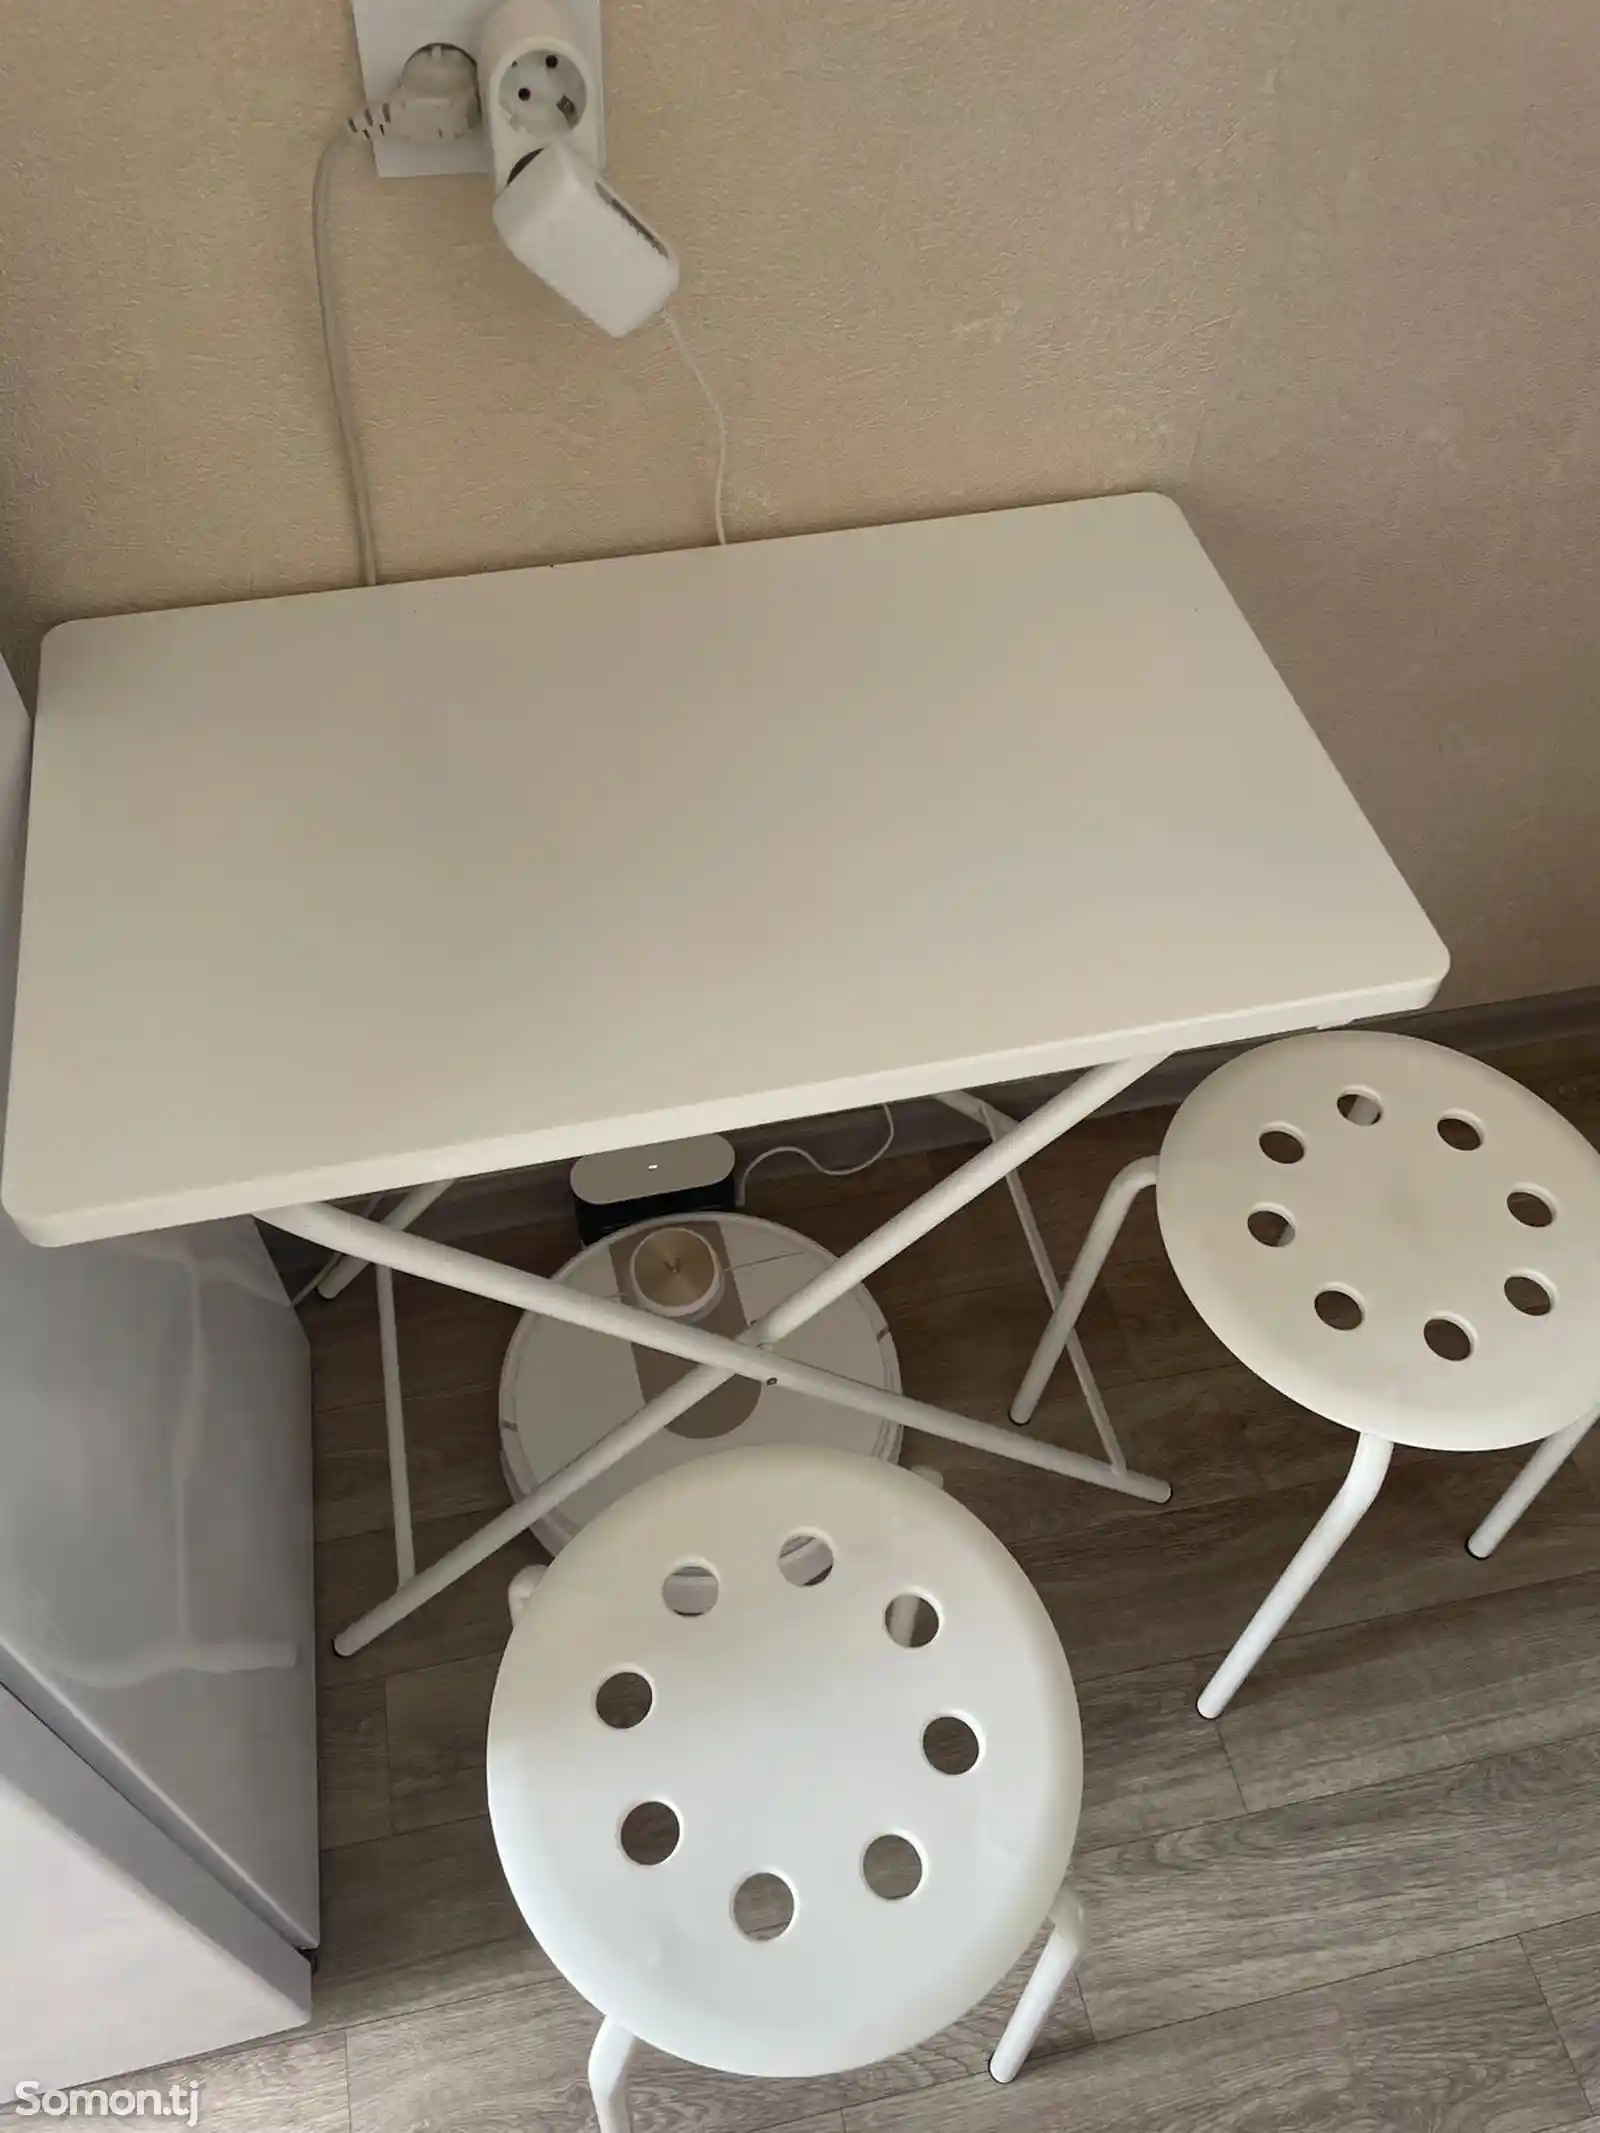 Складной стол и стулья